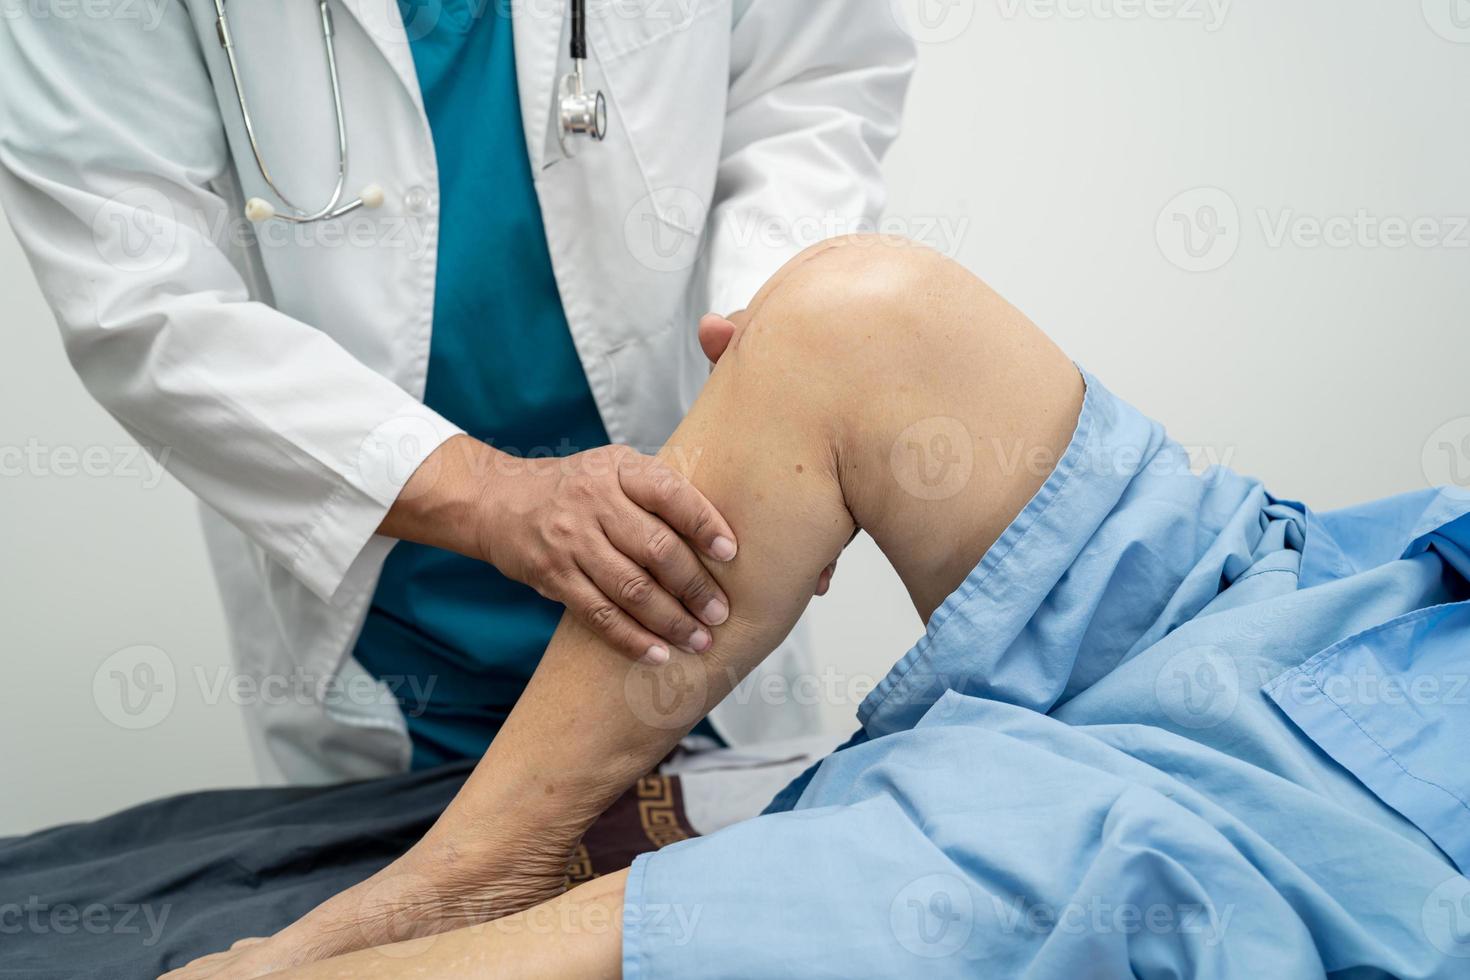 médico asiático fisioterapeuta que examina, masajea y trata la rodilla y la pierna del paciente mayor en el hospital de enfermería de la clínica médica ortopedista. foto